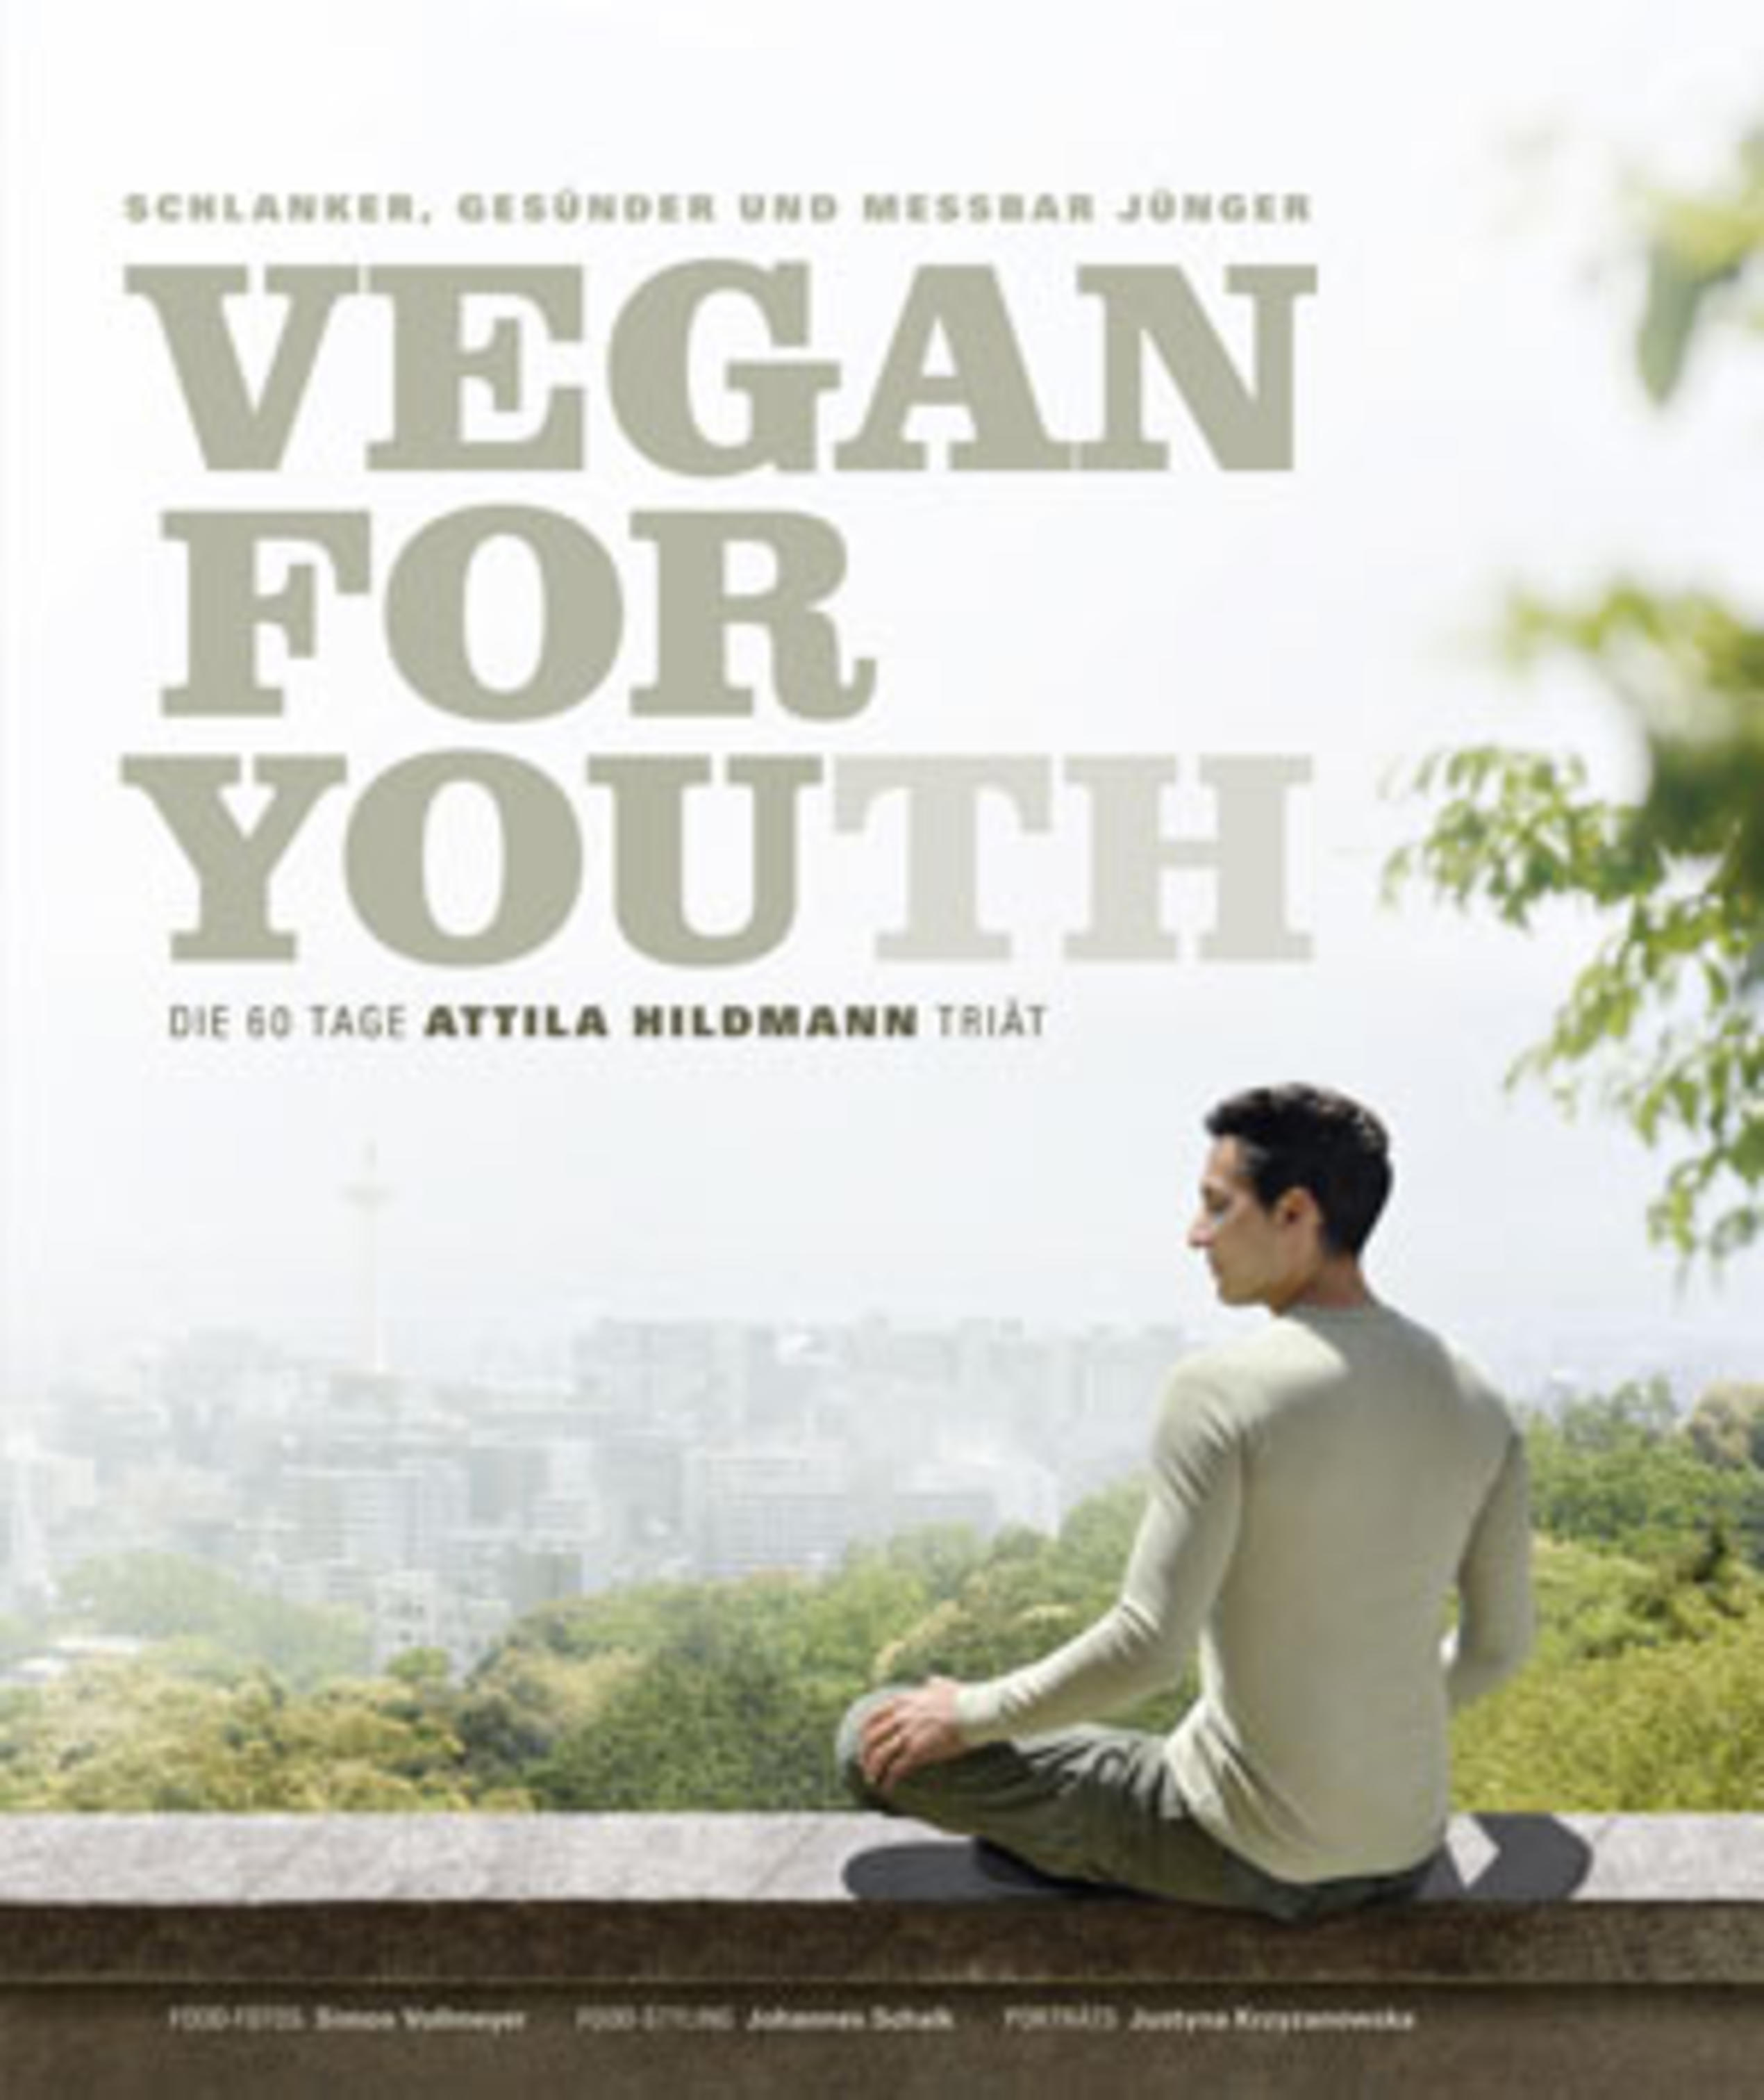 Attila Hildmann: Vegan Youth